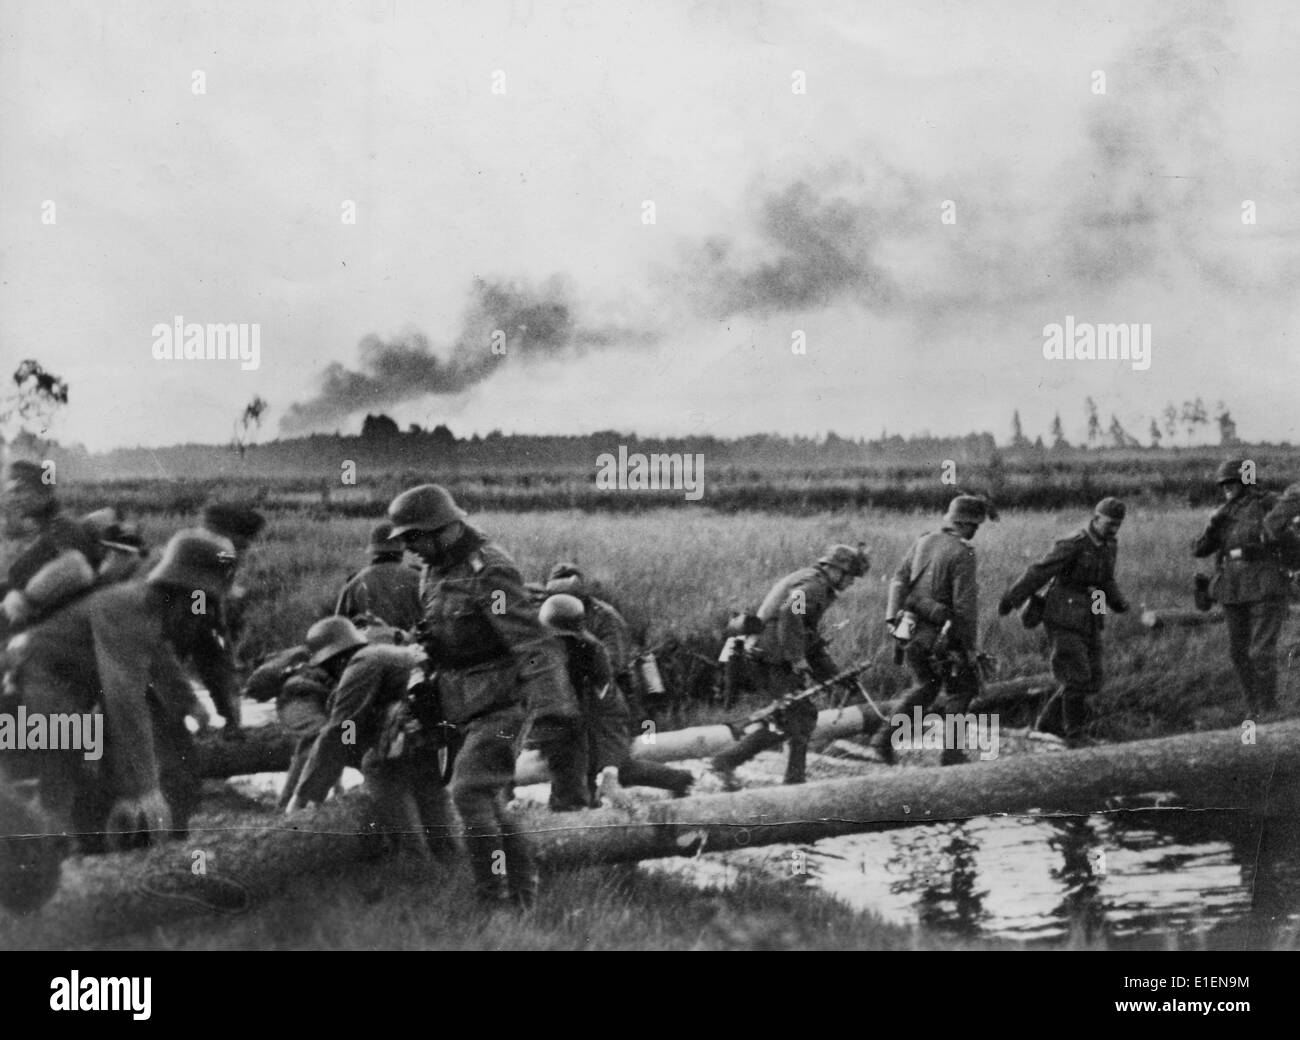 1 июня в великой отечественной войне. Войска вермахта пересекают границу СССР. 22 Июня 1941 река Буг. Немецкие солдаты 22 июня 1941.